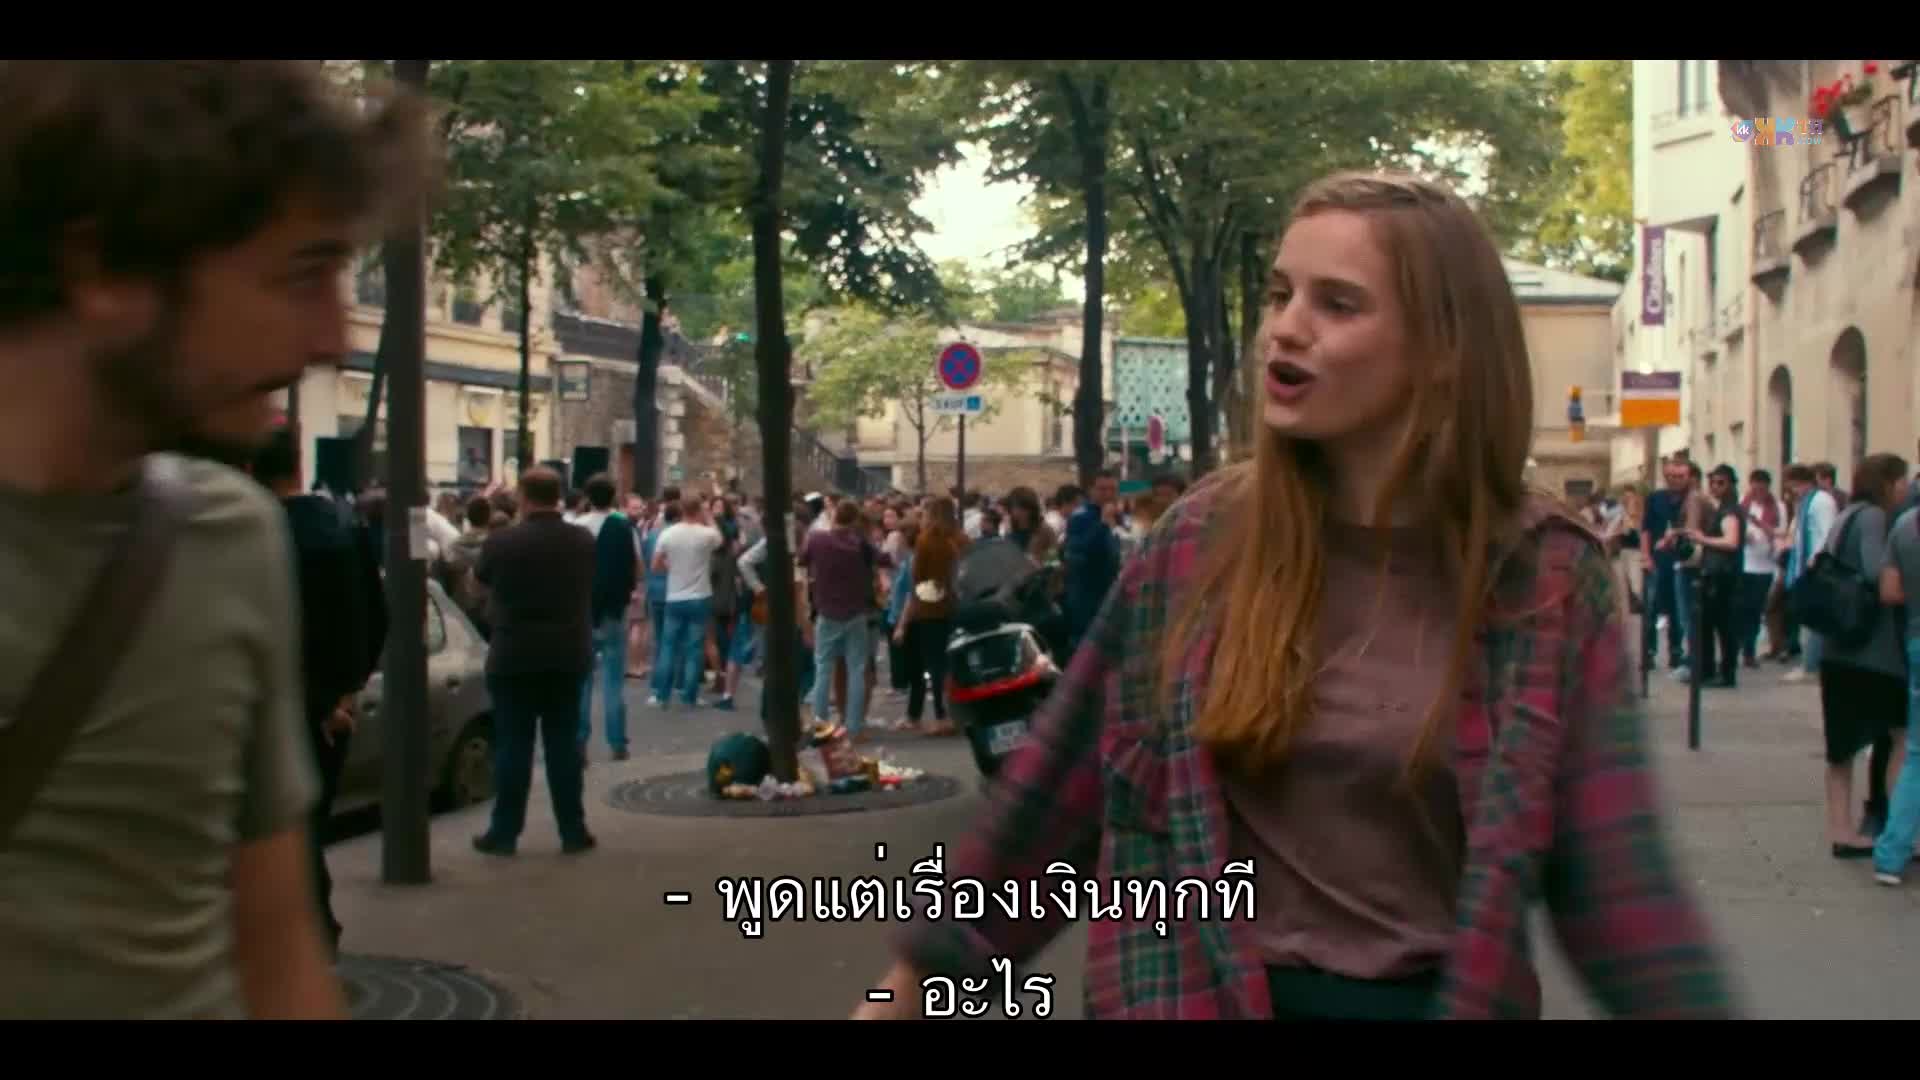 Paris Is Us (2019) ปารีสแห่งรัก